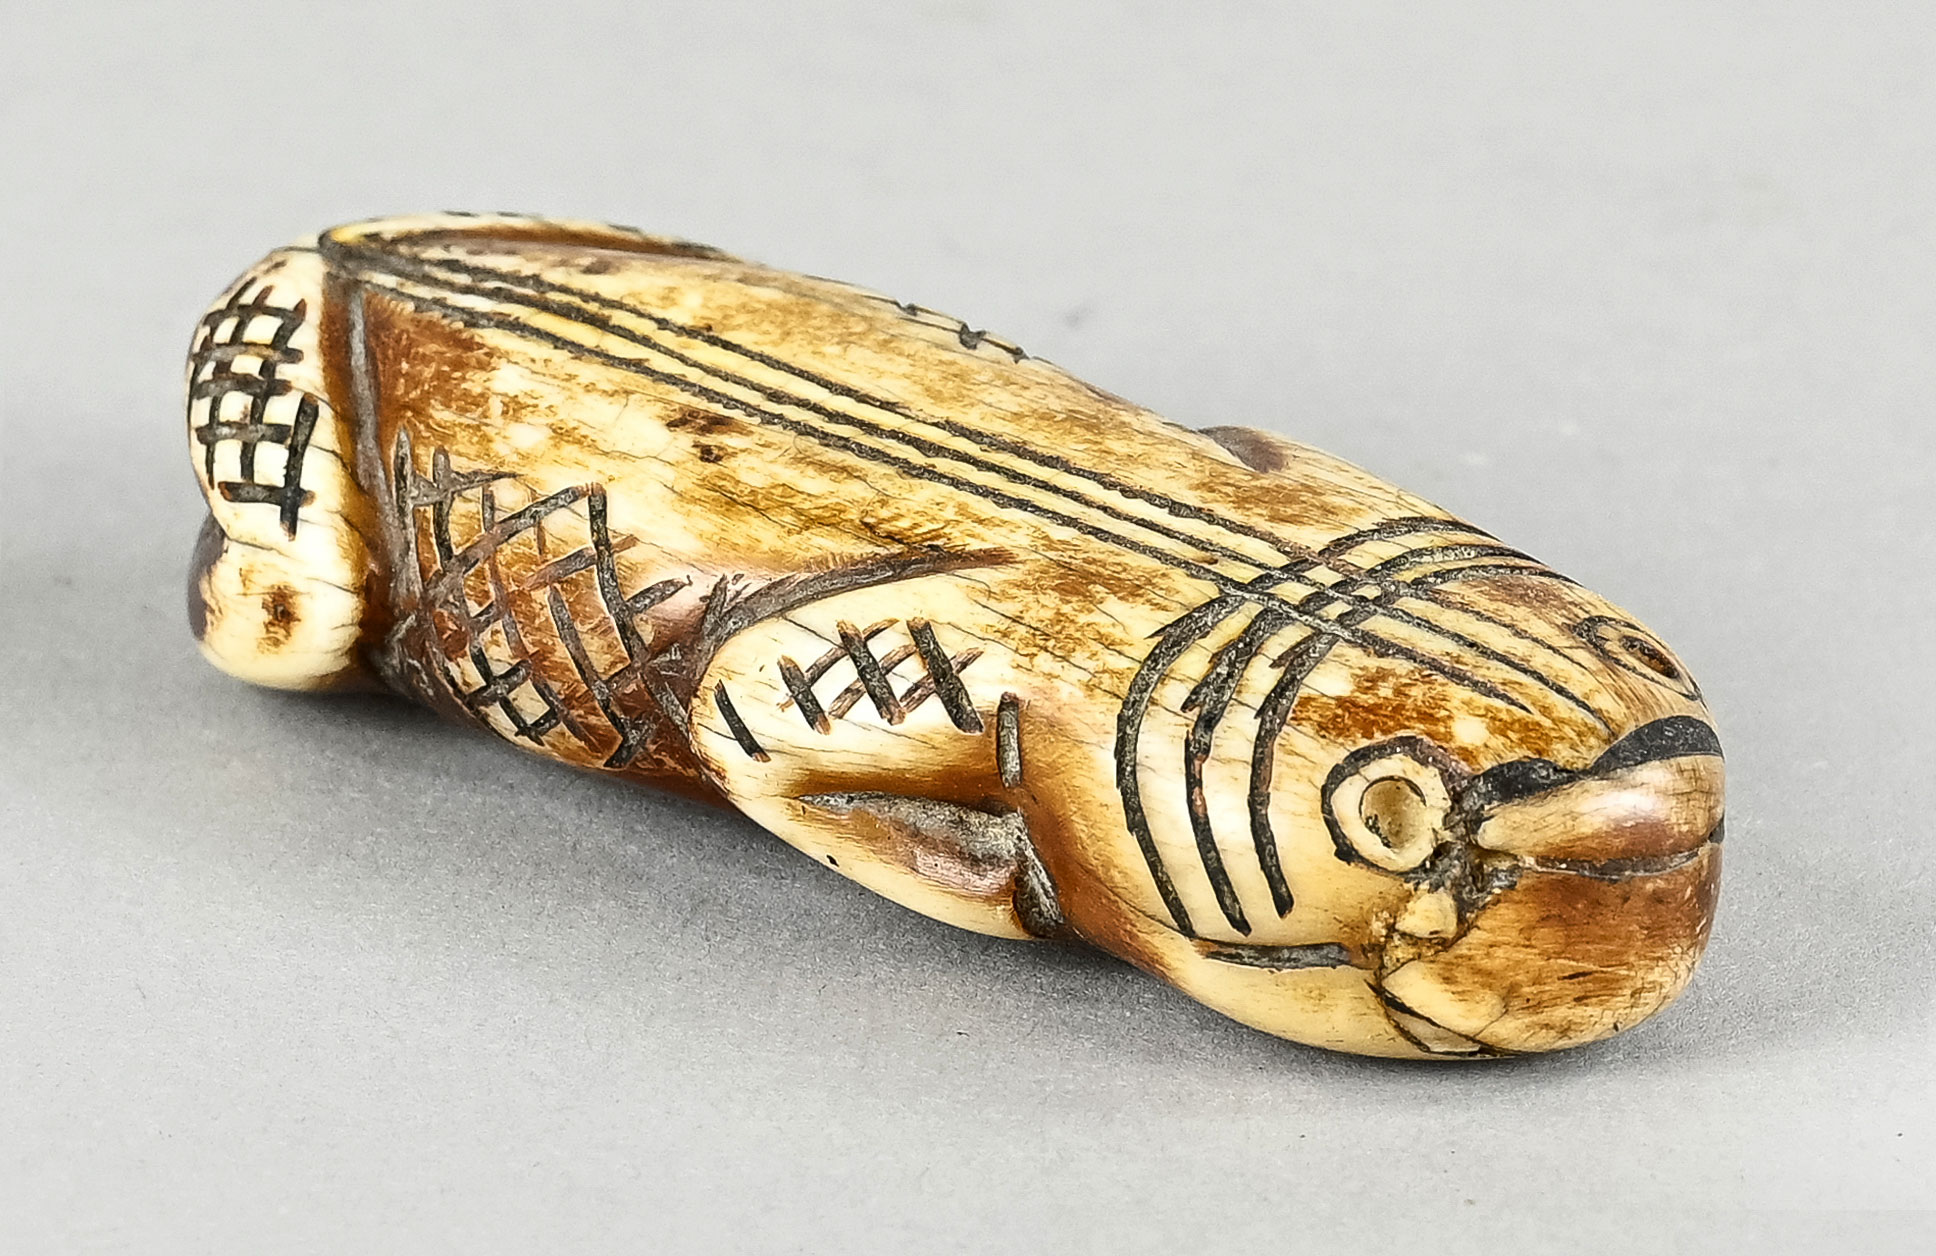 Inuit Schnitzerei, Tierfigur kauernd, mit rautenförmigen Verzierungen, aus Bein geschnitzte Figur, 